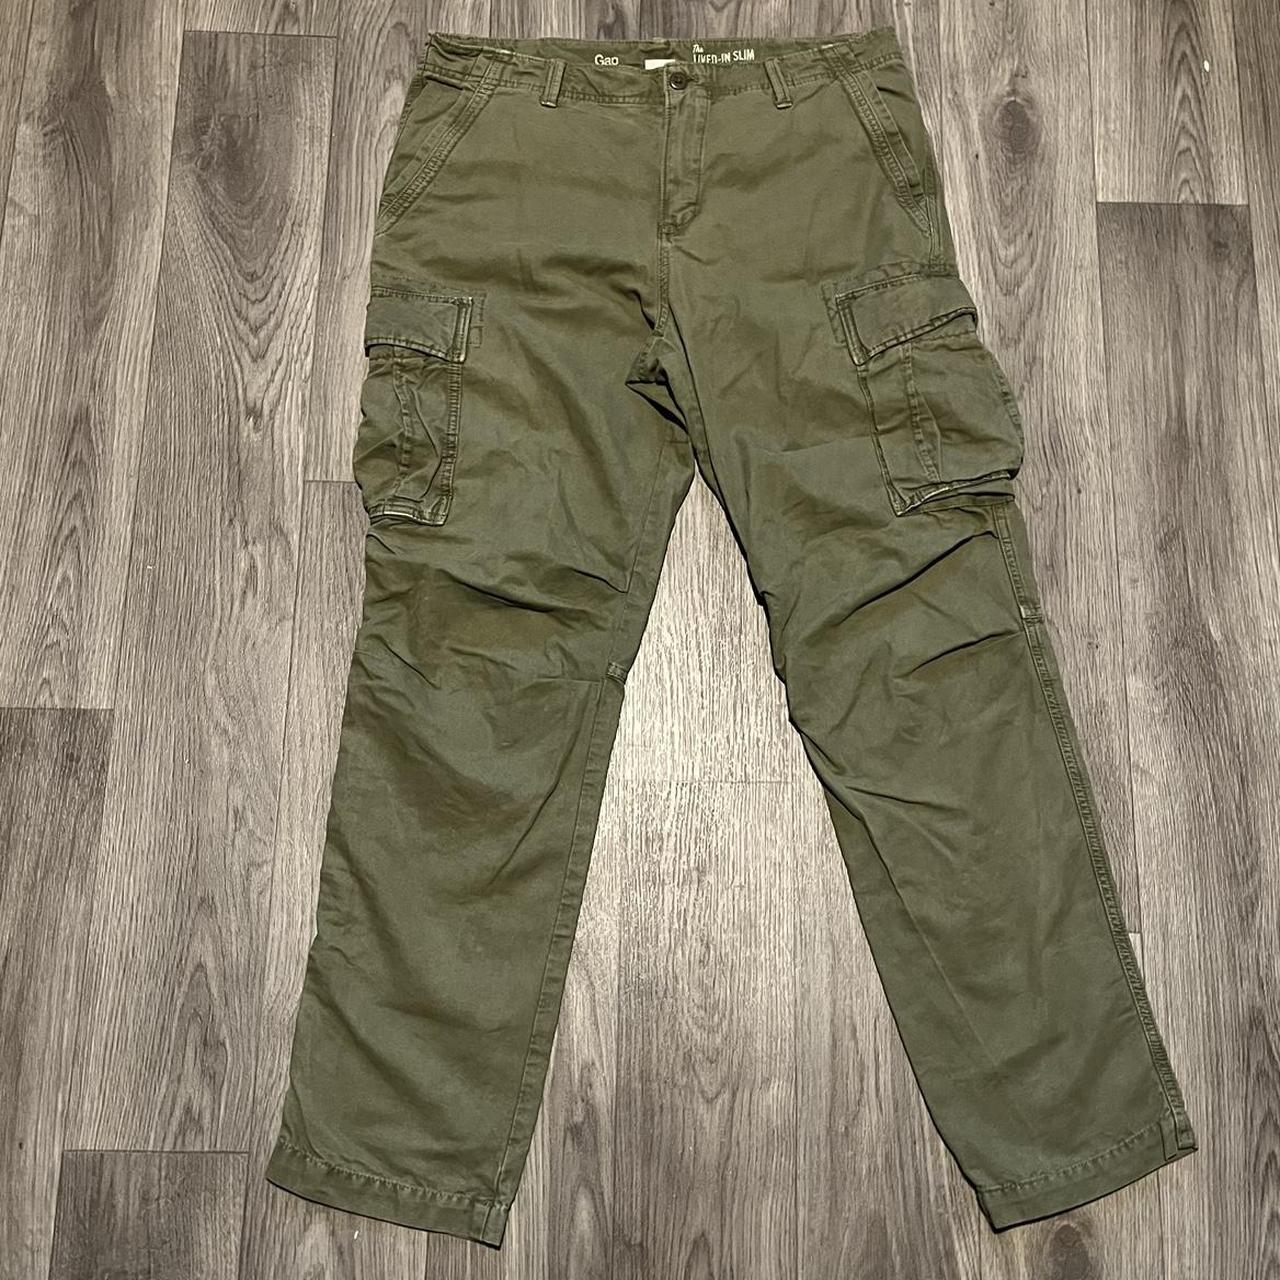 Khaki cargo pants Gap cargo trousers in a khaki... - Depop